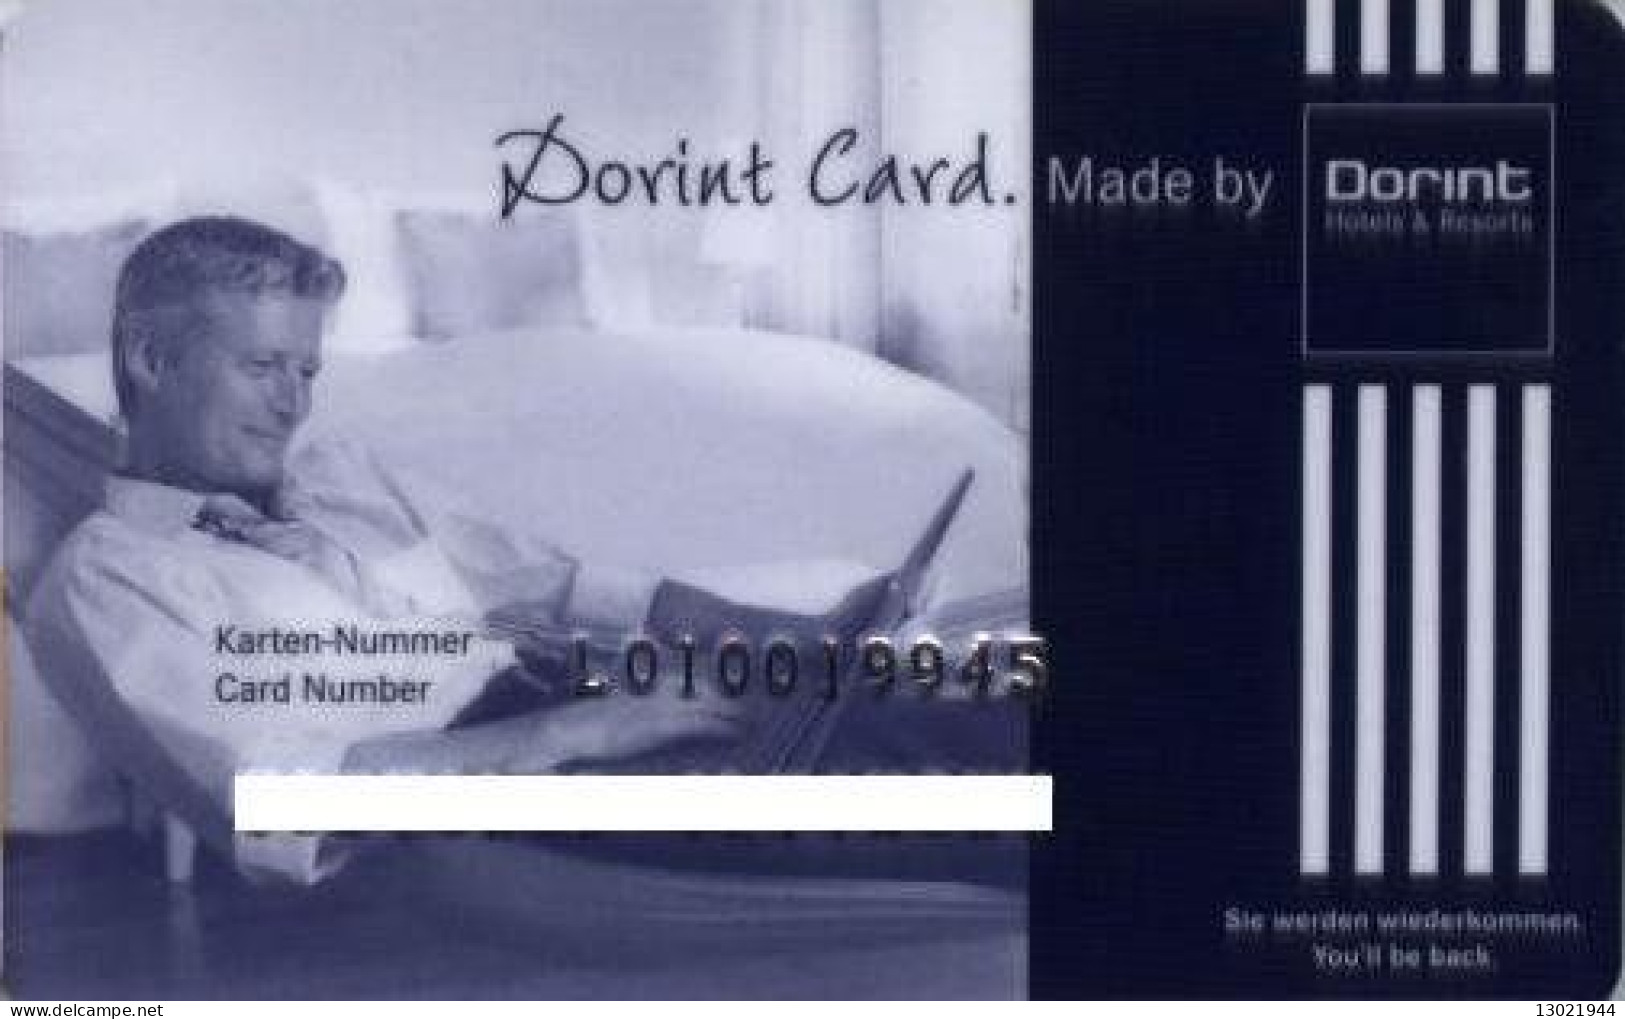 GERMANIA  KEY HOTEL   Dorint Card - Loyalty Card - Hotel Keycards